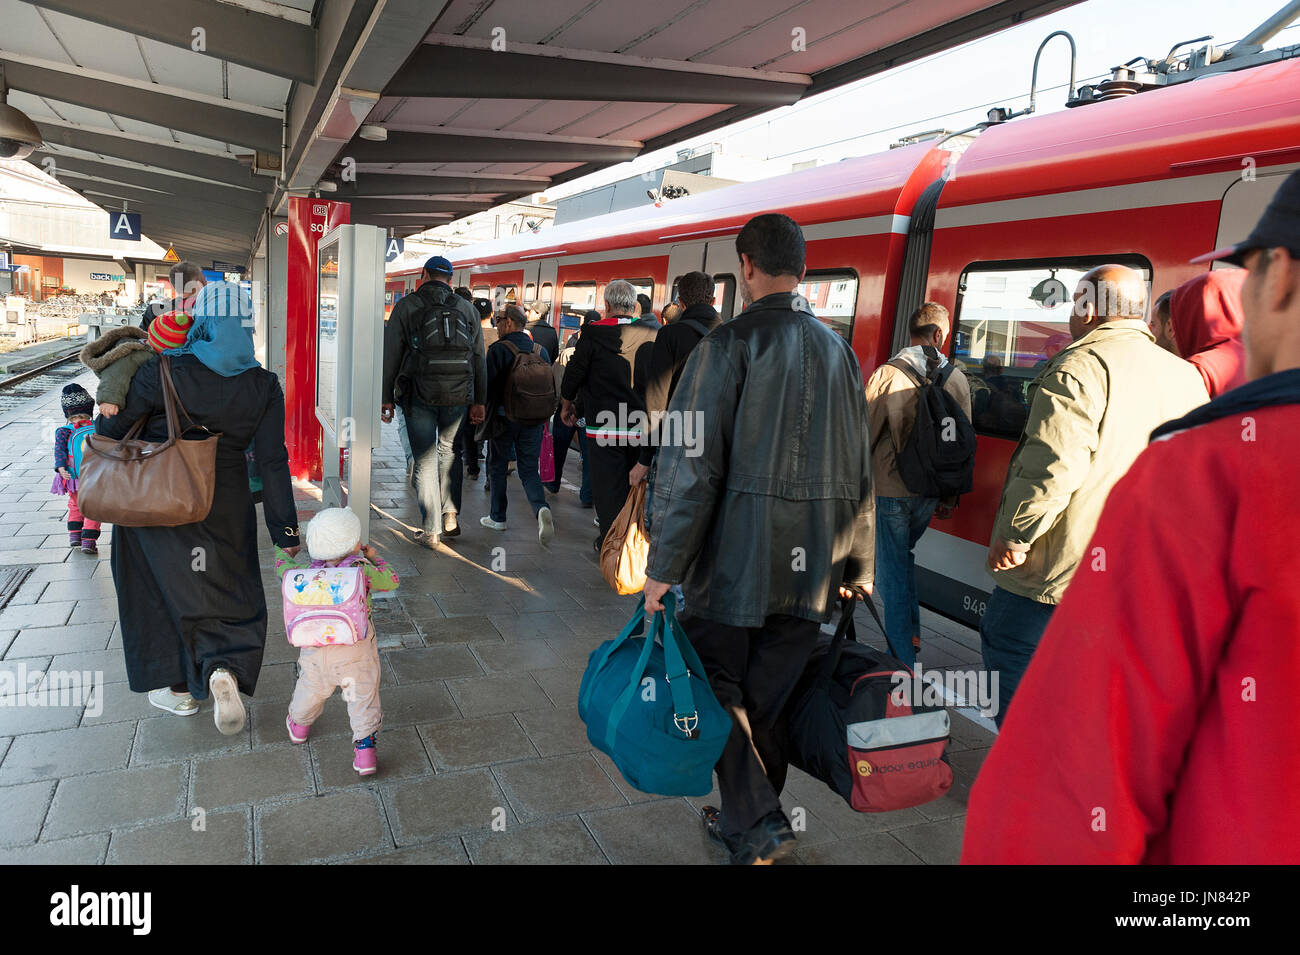 Monaco di Baviera, Germania - Settembre 10th, 2015: i rifugiati dalla Siria, Afghanistan e dei paesi balcanici arrivando alla stazione centrale di Monaco di Baviera per chiedere asilo. Foto Stock